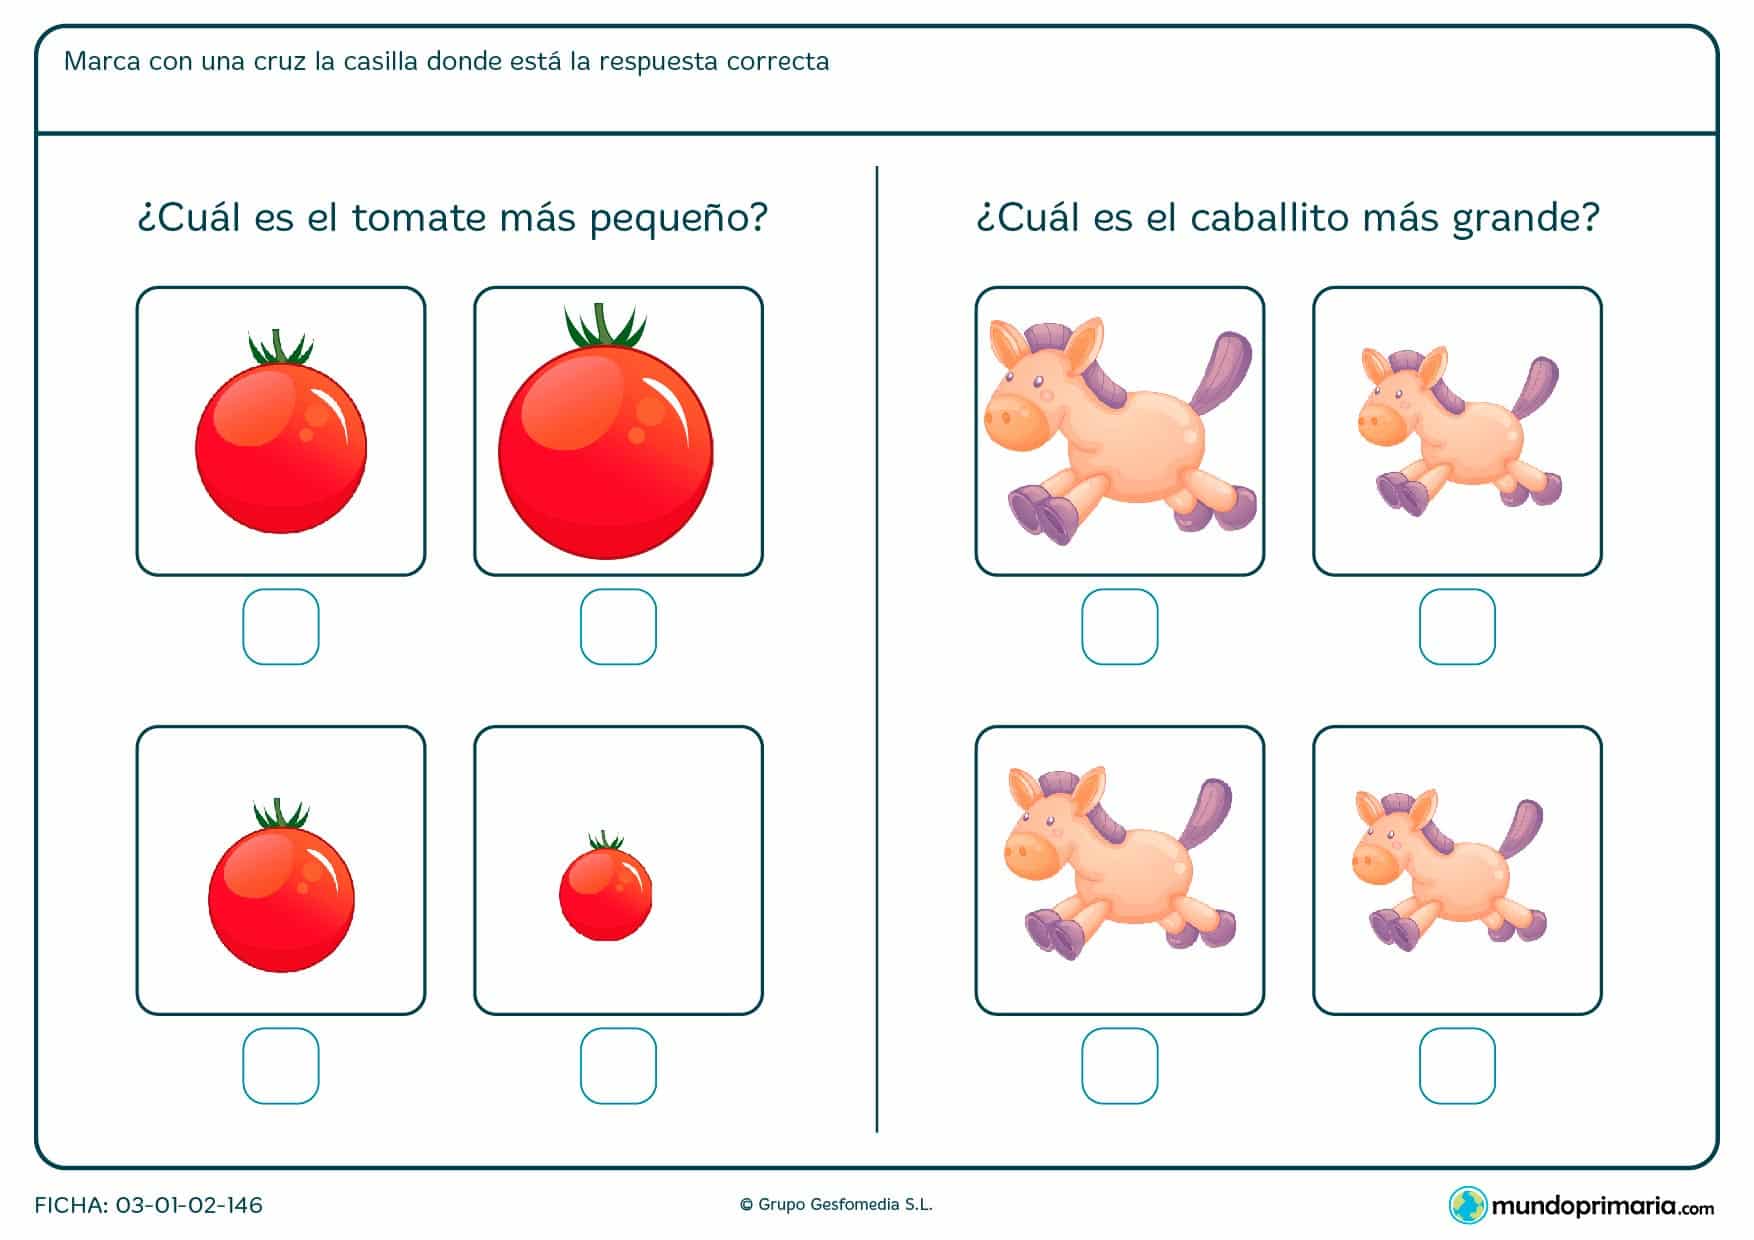 ¿Cuál es el tomate más pequeño? ¿Y el caballito más grande? Compara las imágenes para resolverlo.